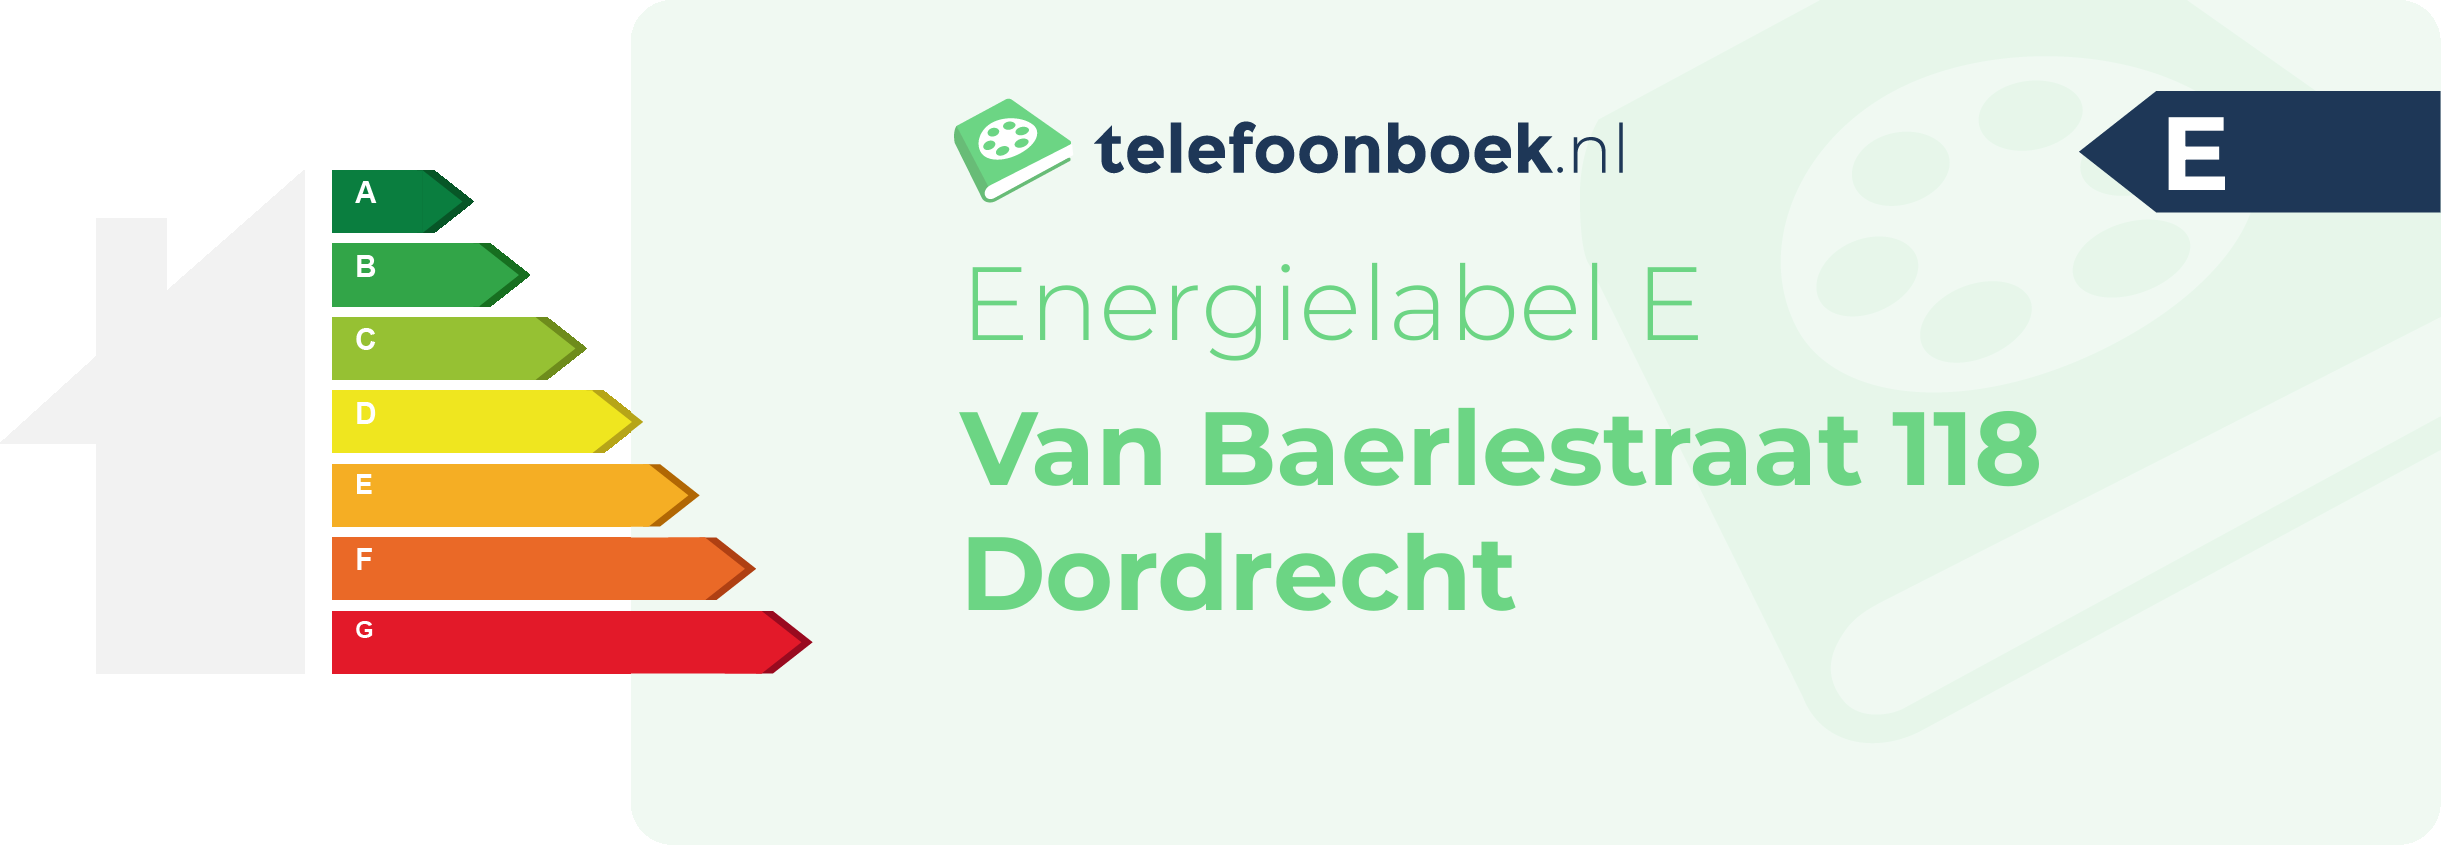 Energielabel Van Baerlestraat 118 Dordrecht